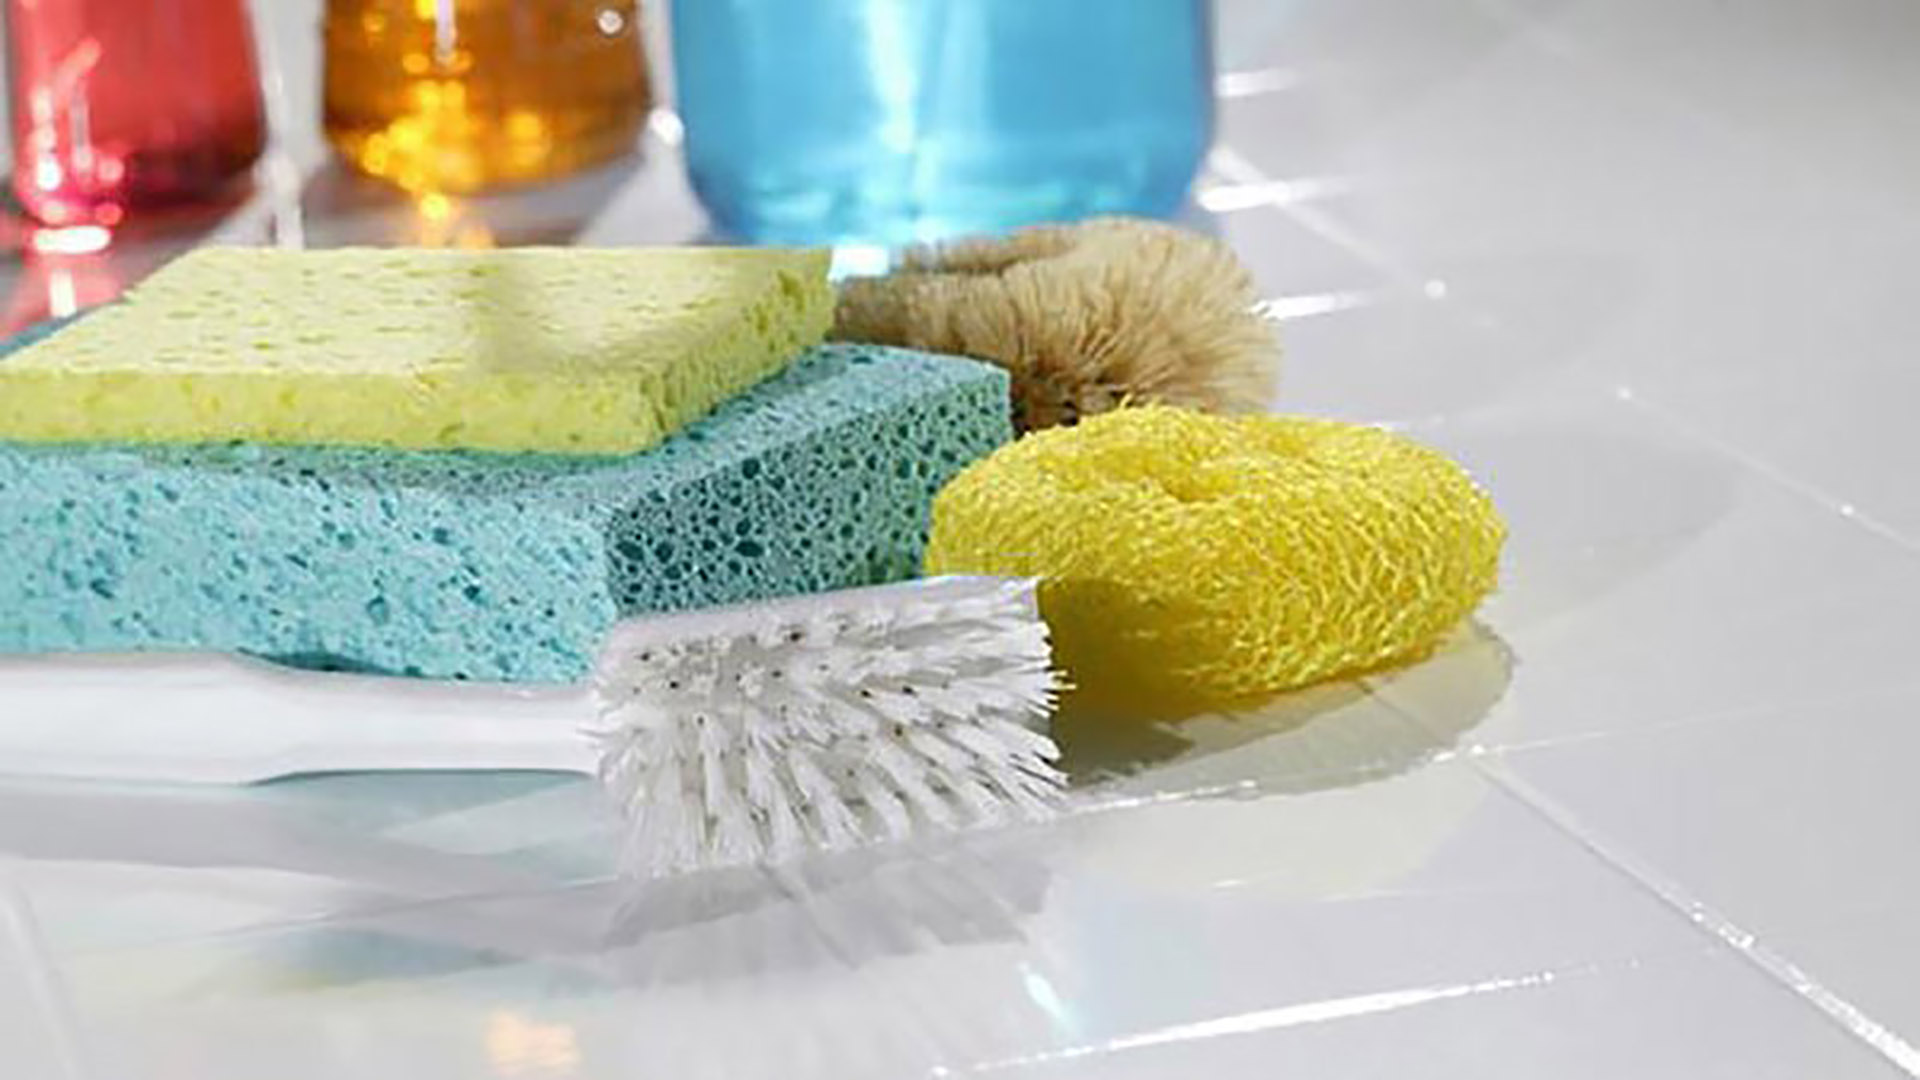 Las esponjas y los trapos se deben renovar con frecuencia las, al igual que el resto de los utensilios, se deben higienizar seguido. (Prexels)